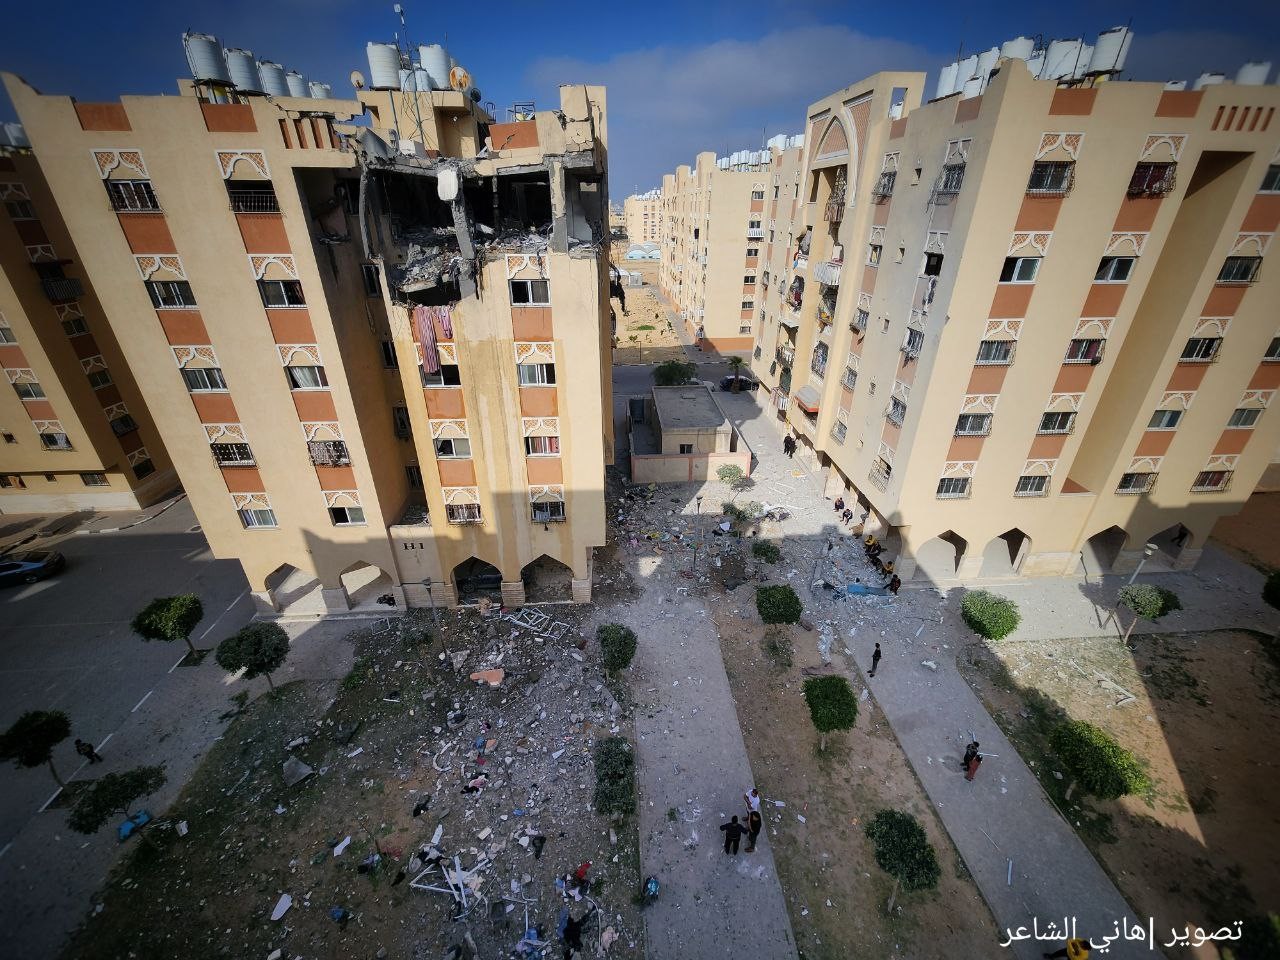 دمار كبير يخلفه القصف الإسرائيلي على شقة سكنية في مدينة حمد القطرية بخانيونس 34.jpg